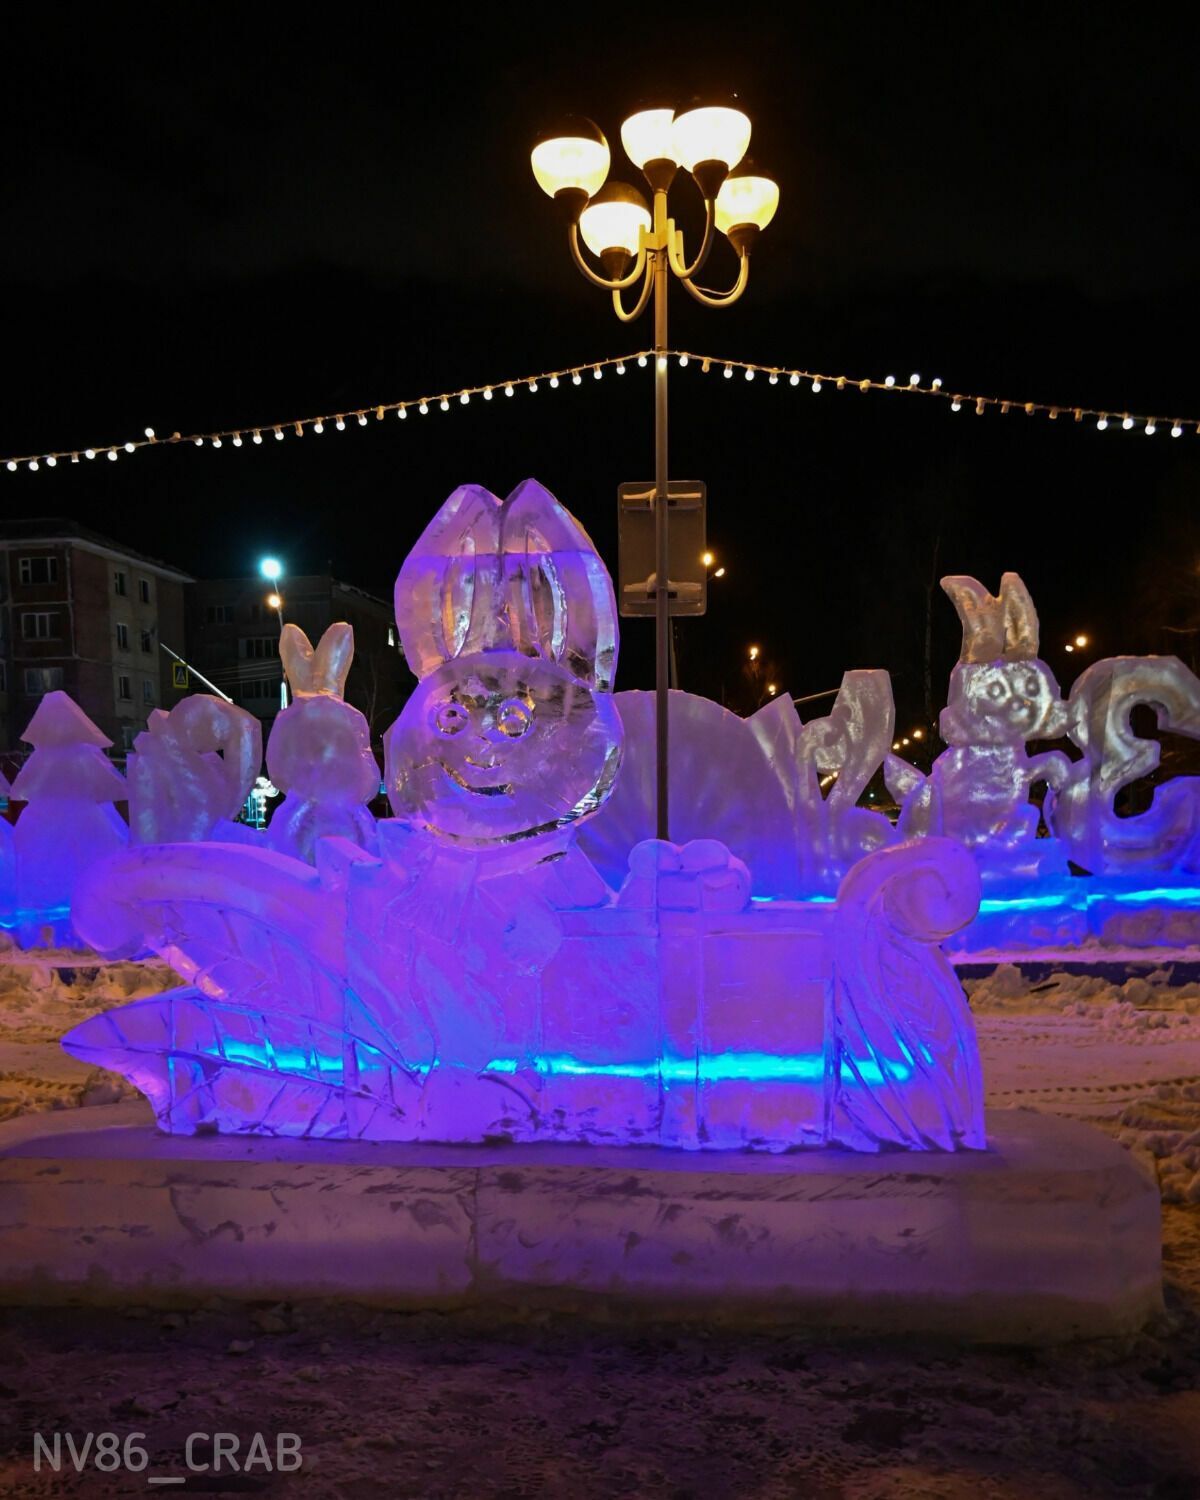 У Росії до новорічних  свят вирізали з льоду моторошну снігуроньку: лякає своїм виглядом перехожих. Фото 